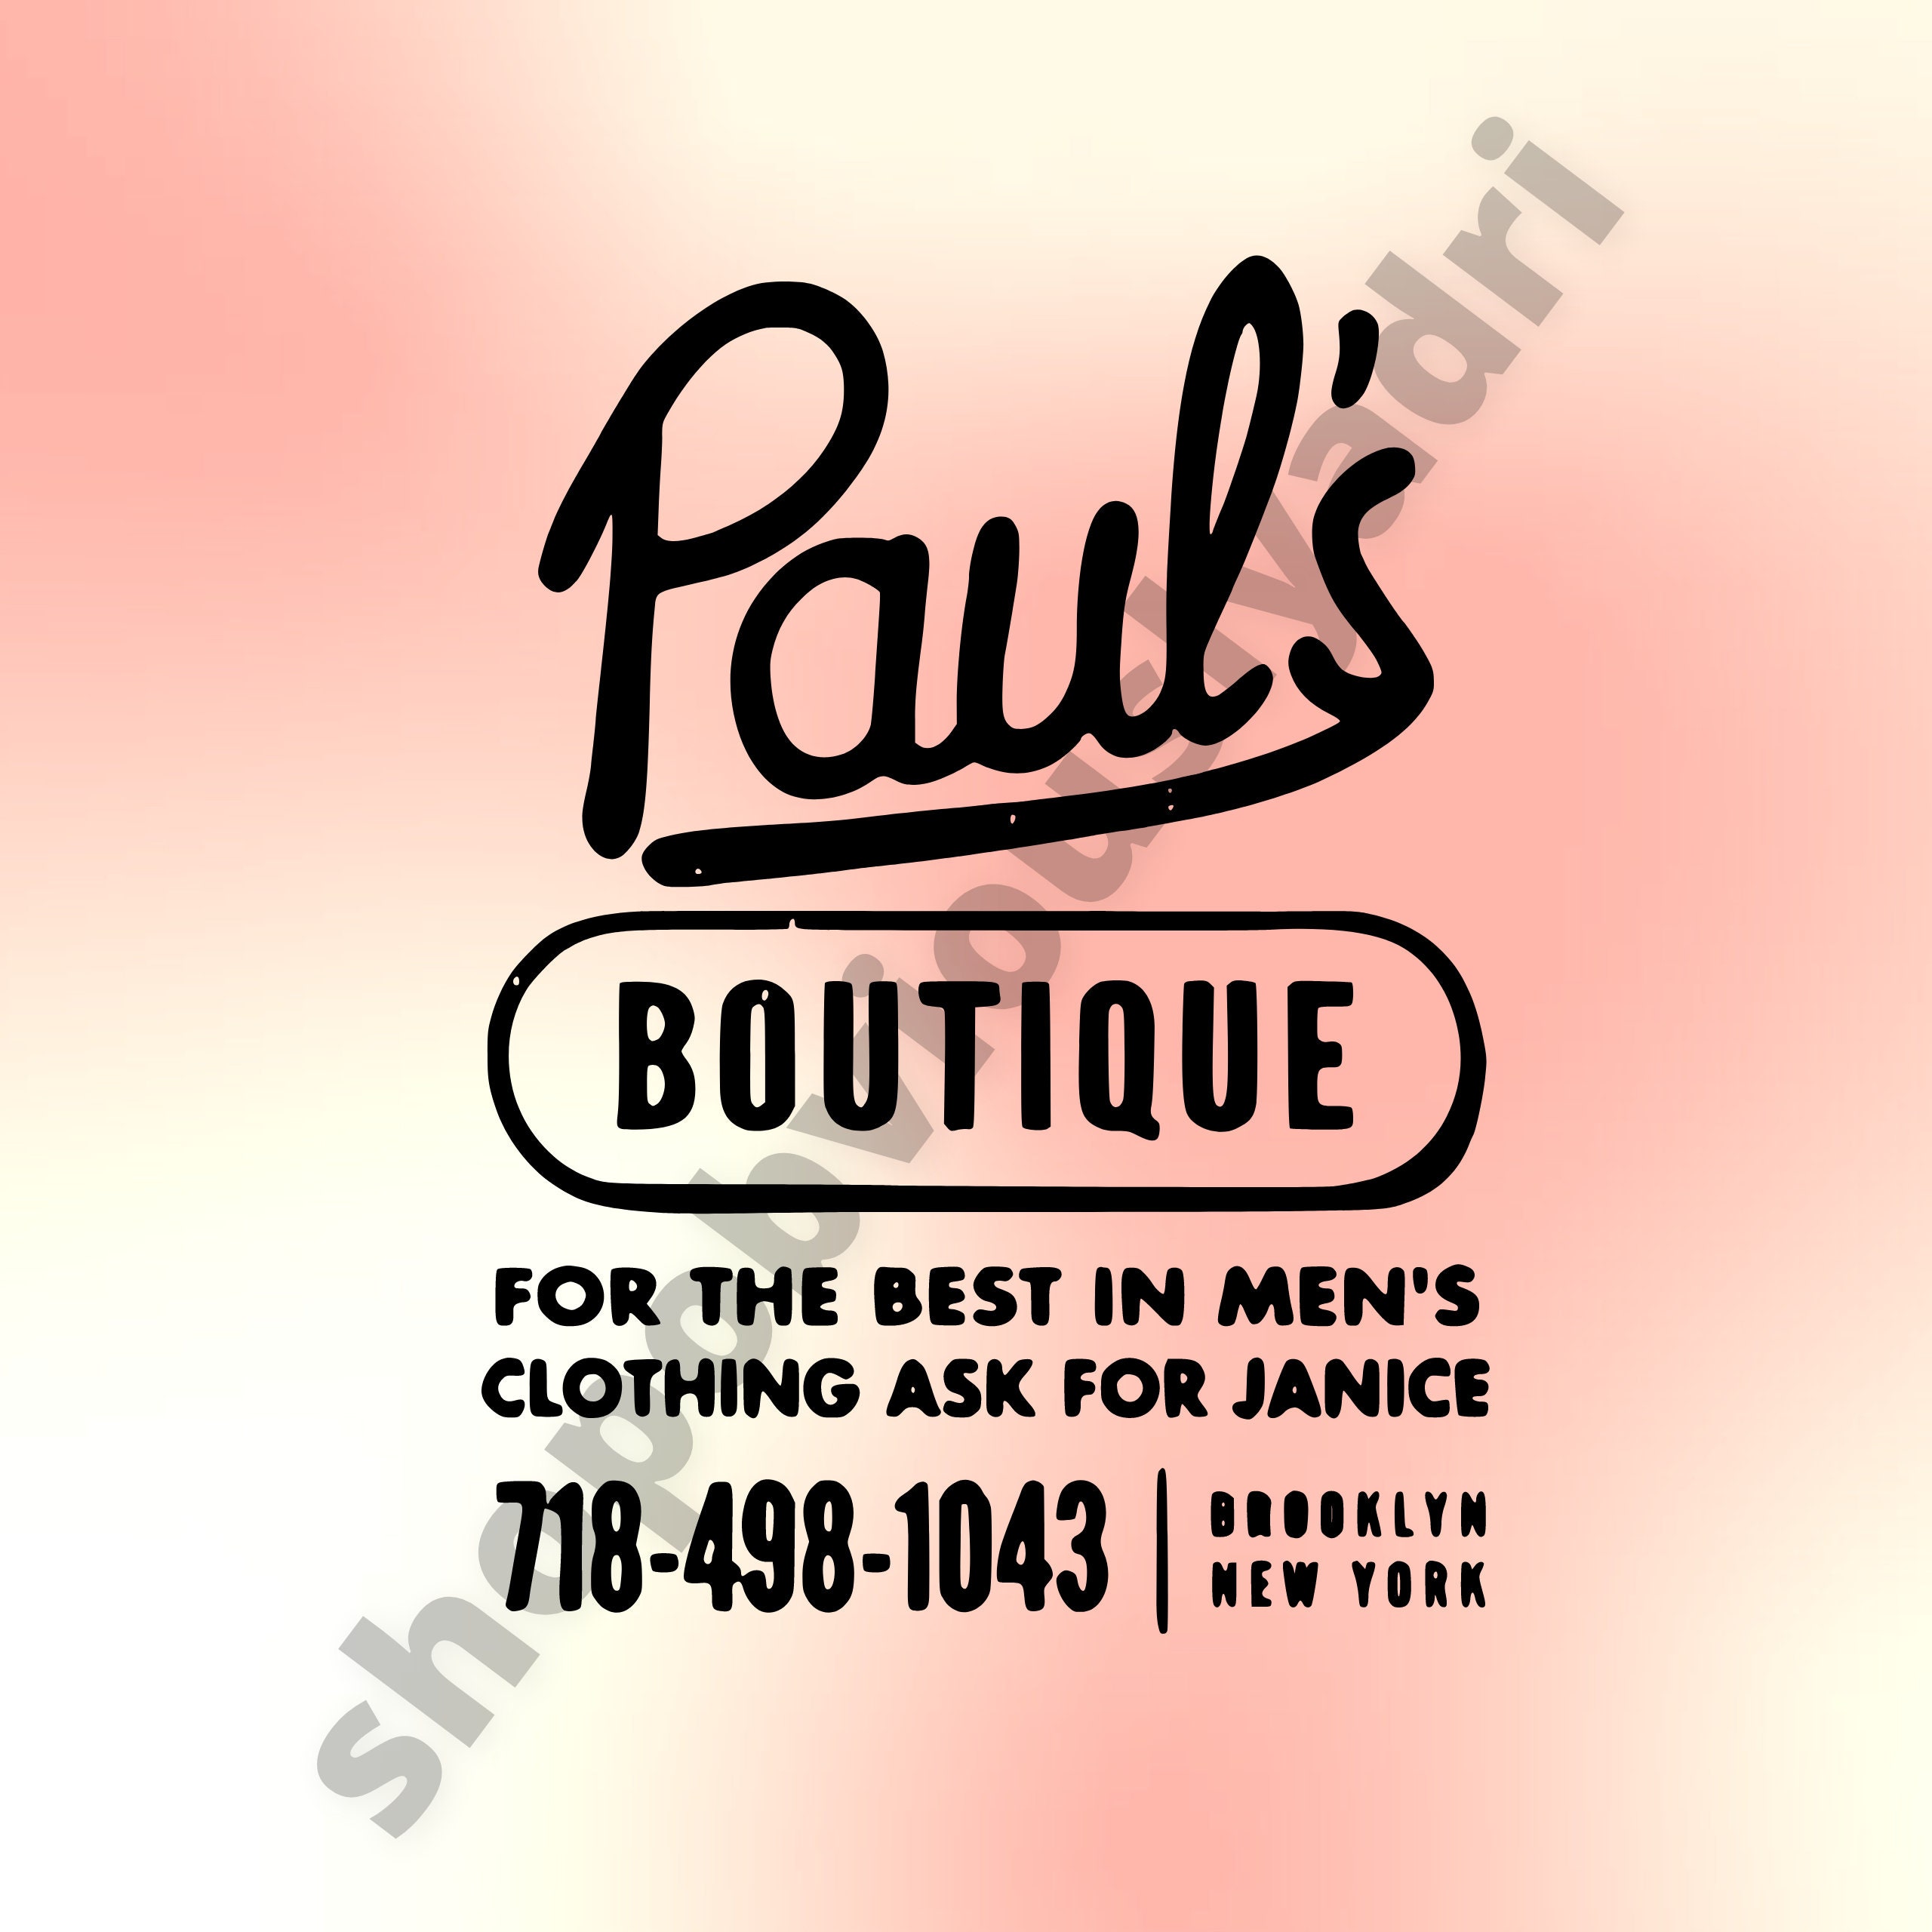 Paul's Boutique SG